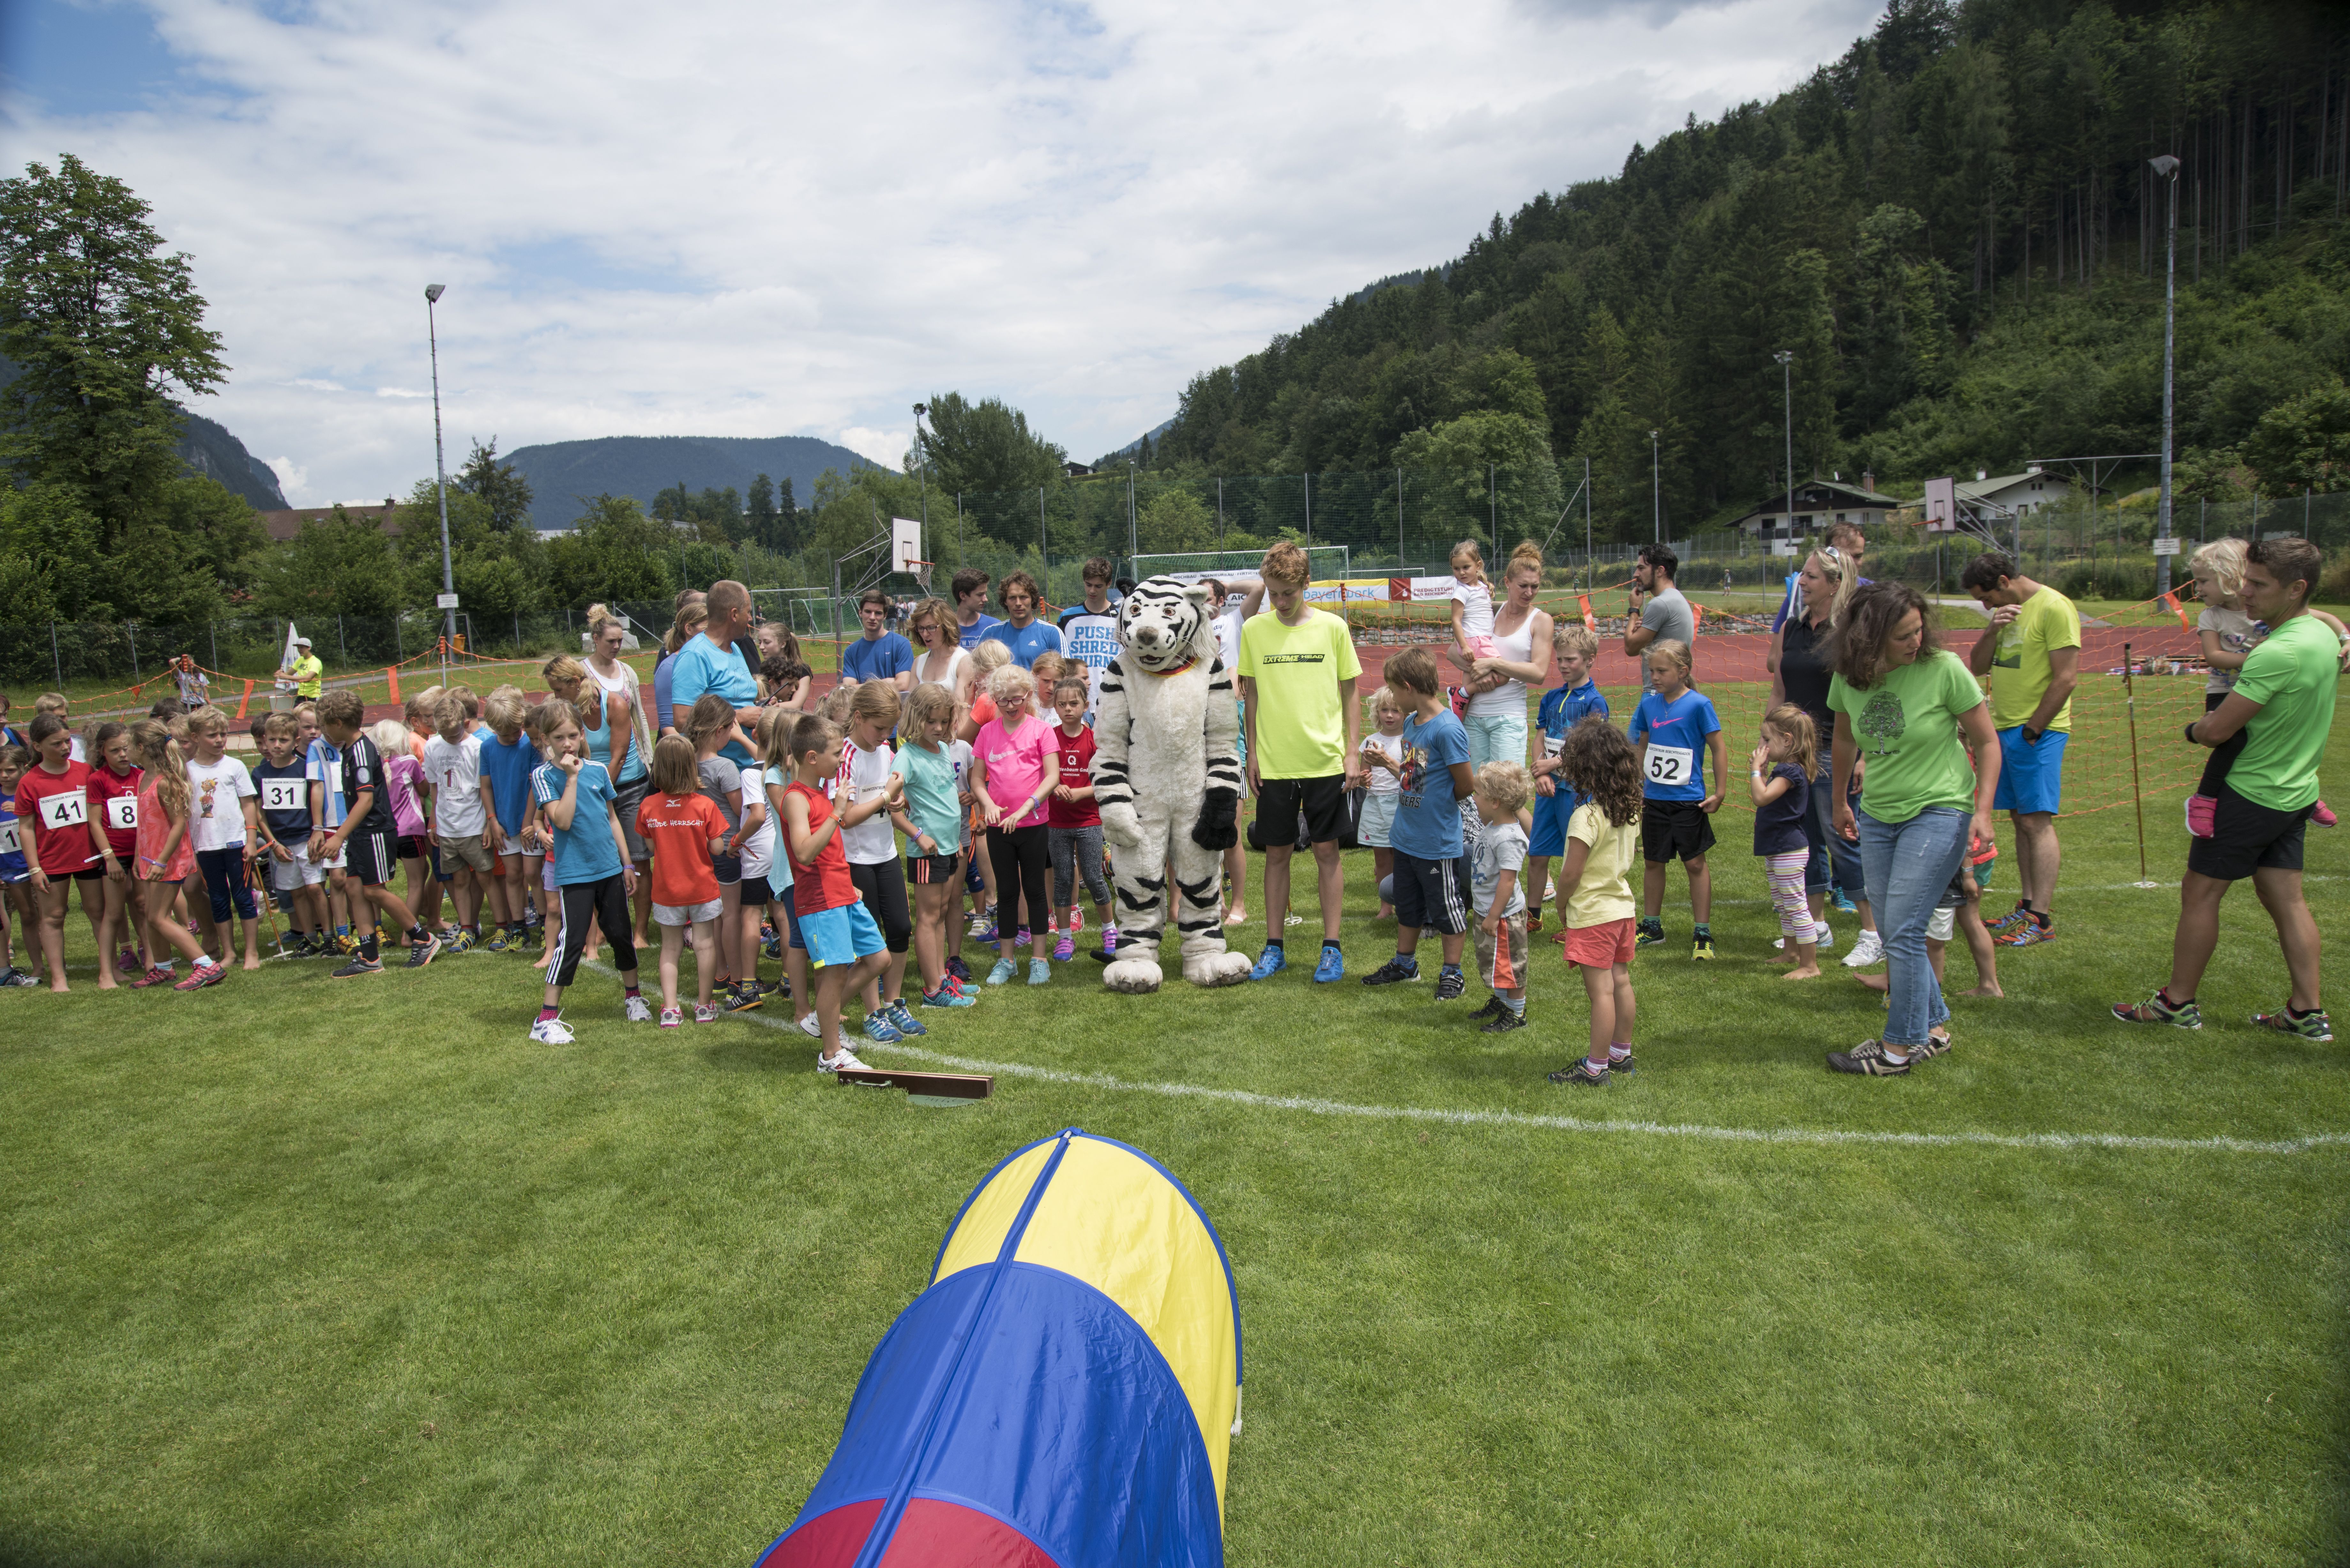 09.07.2016, Berchtesgaden, Breitwiese, Kinderolympiade,